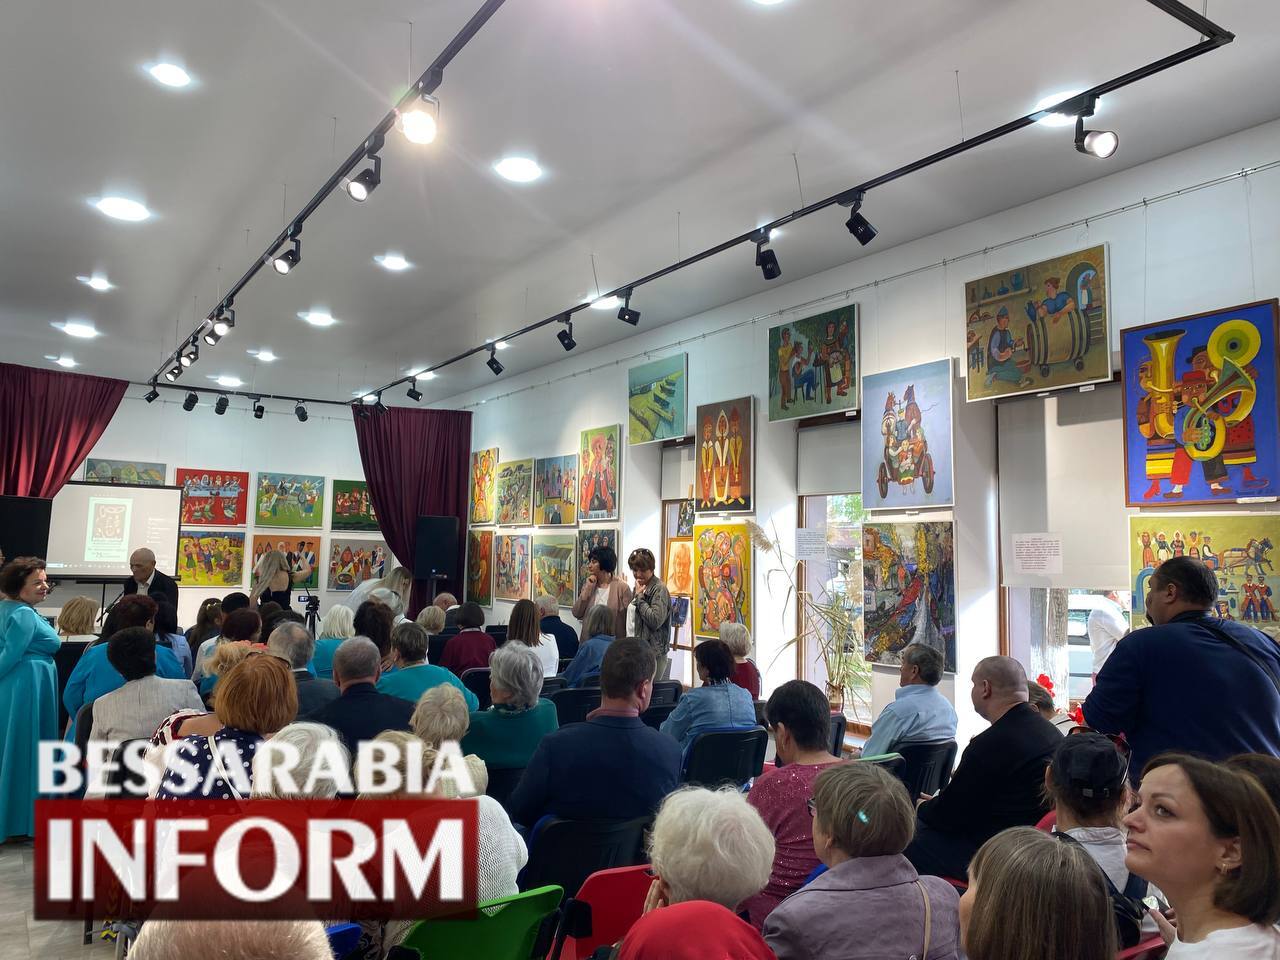 В Арциге прошли творческий вечер и открытие выставки известного бессарабского художника Владимира Афанасьева